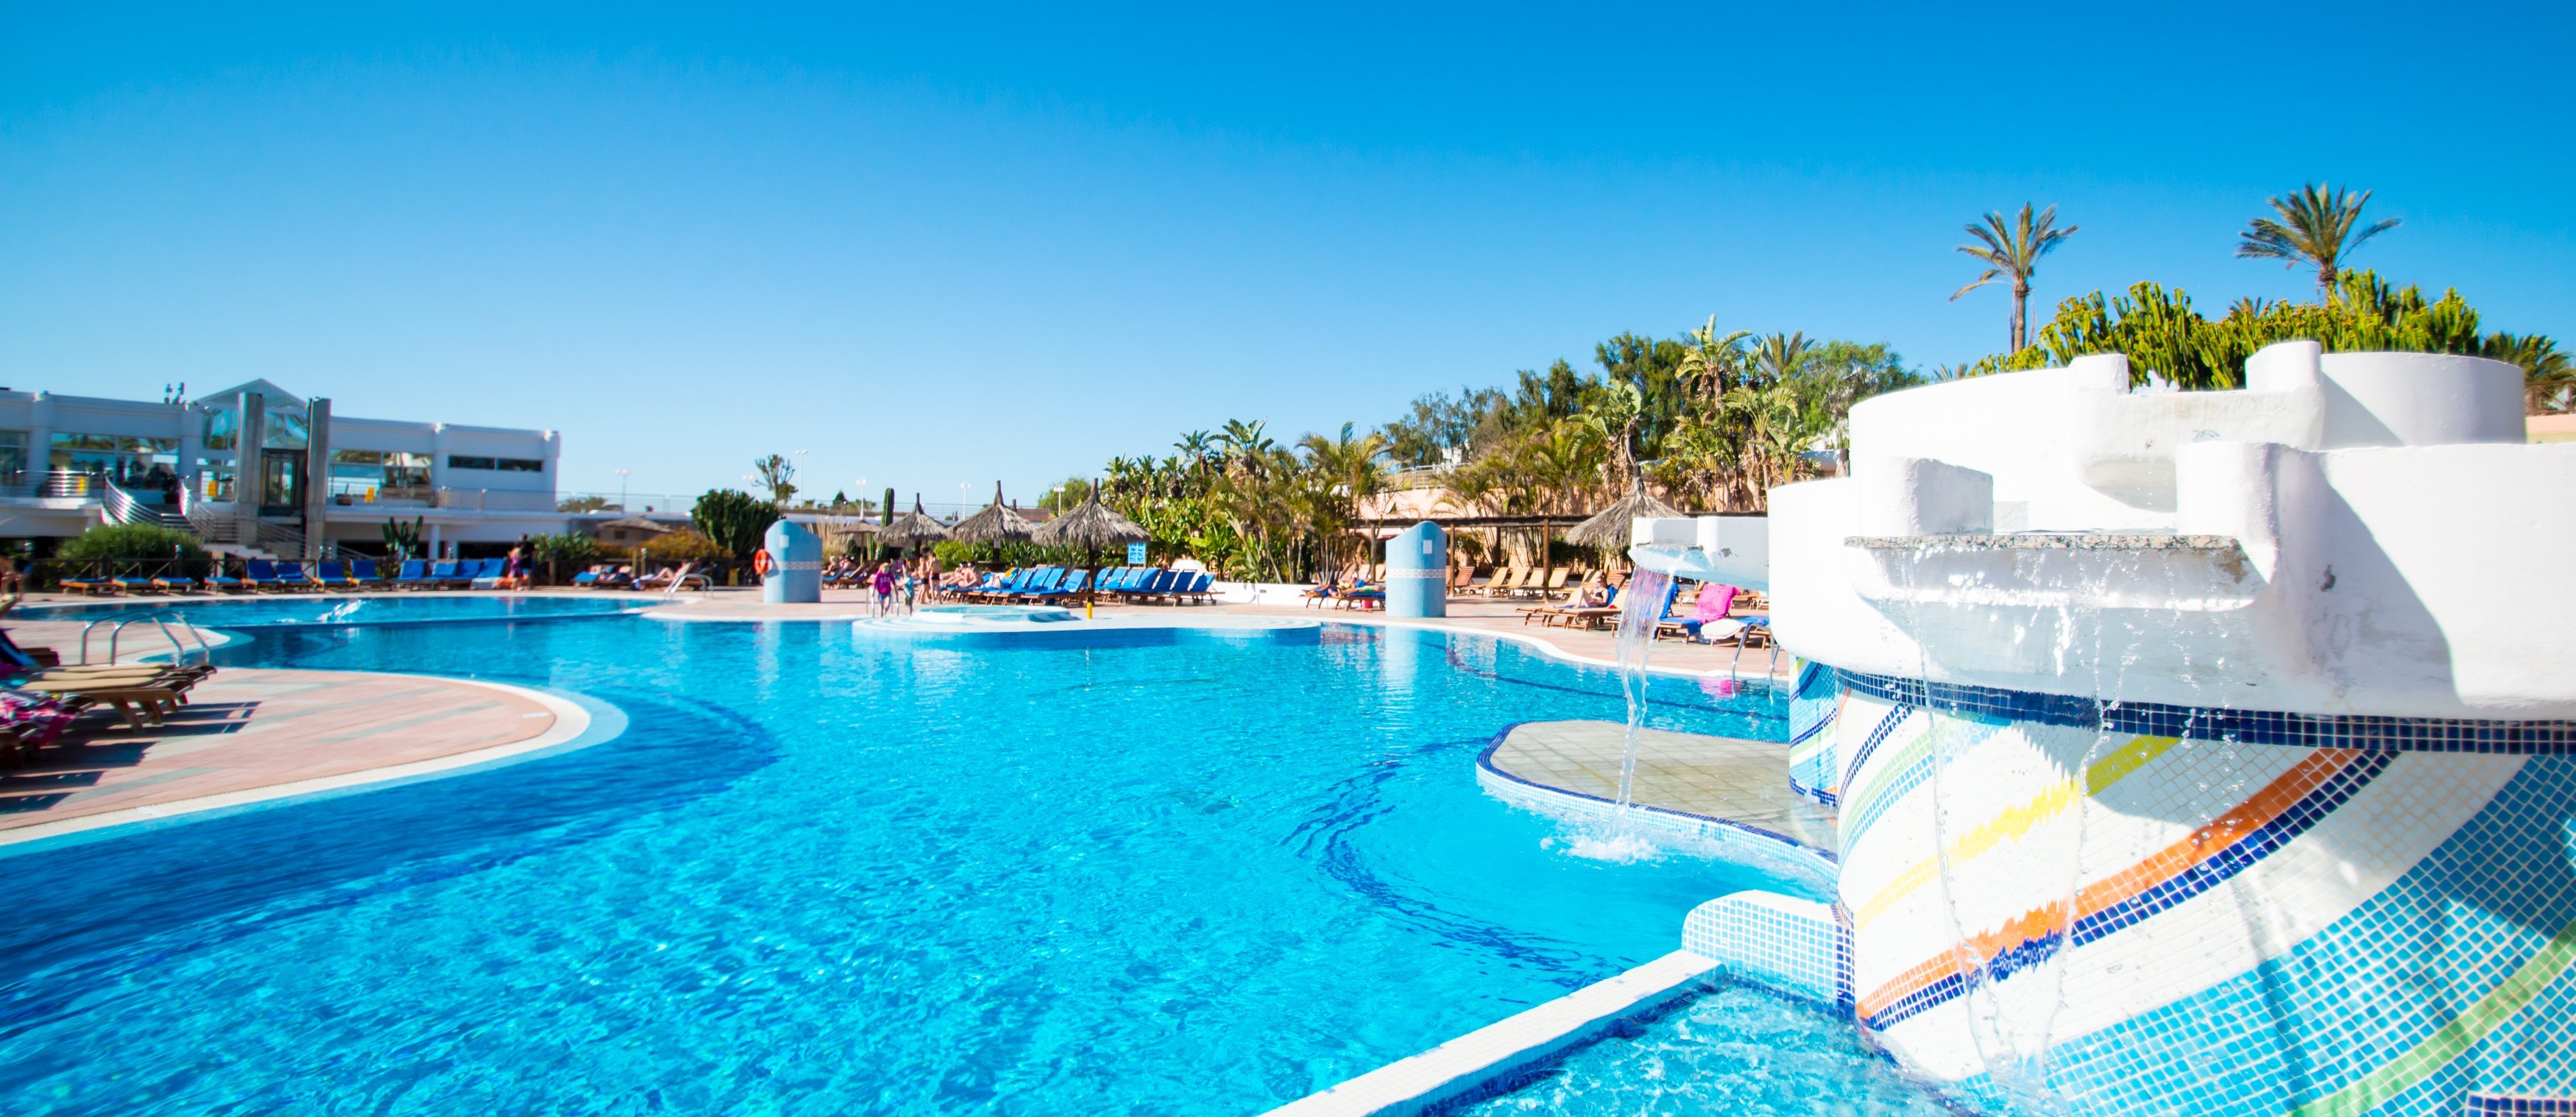 Hotel HL Club Playa Blanca**** - Lanzarote - 